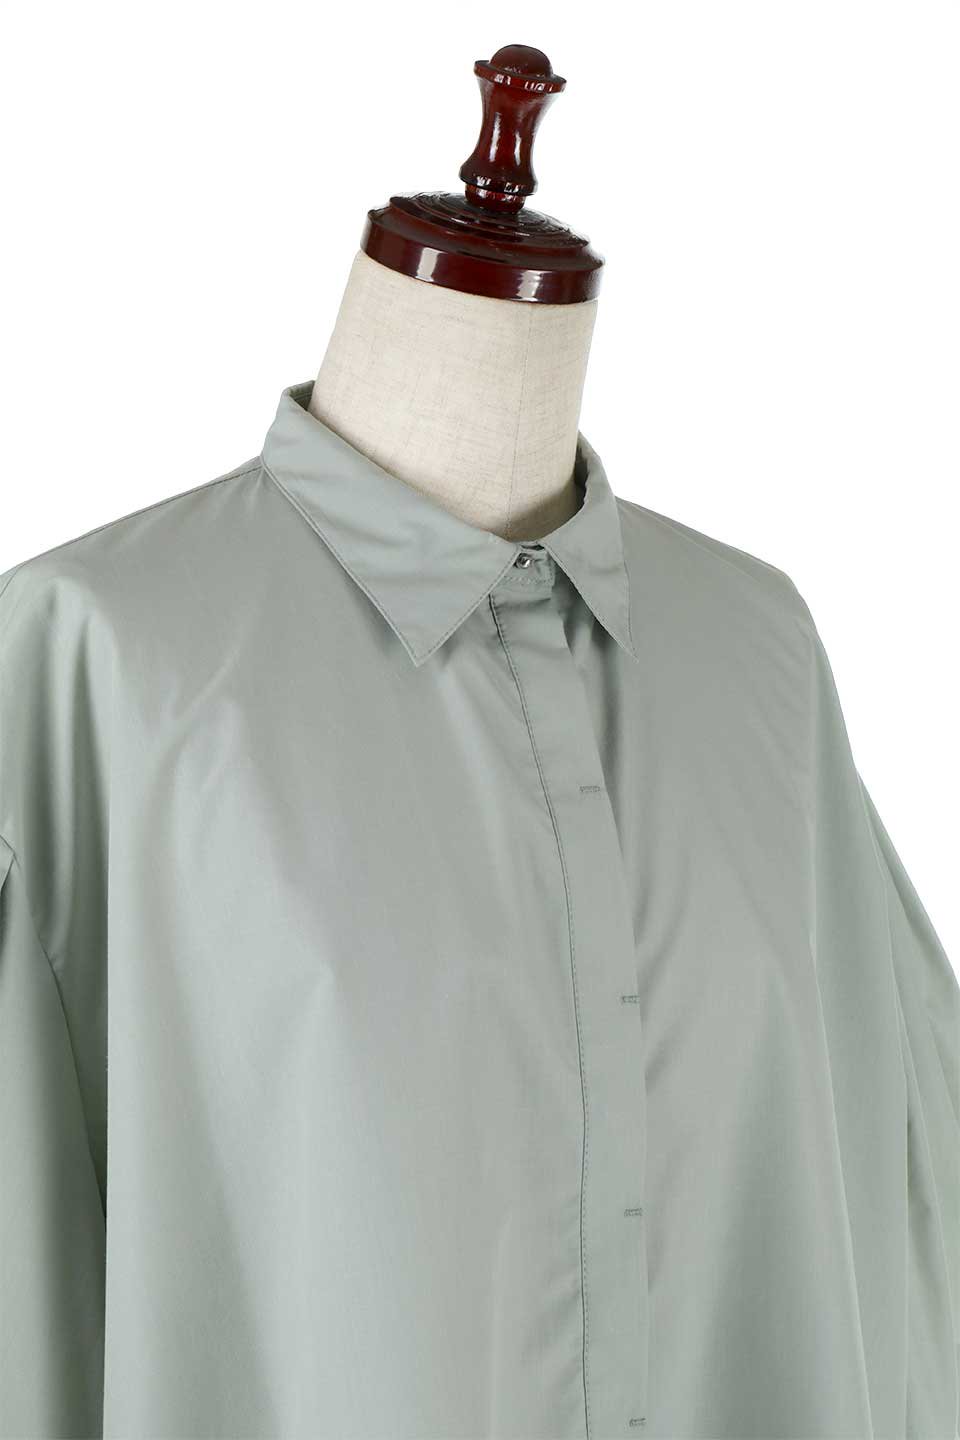 FlareHalfSleeveShirtsフレアスリーブ・五分袖シャツ大人カジュアルに最適な海外ファッションのothers（その他インポートアイテム）のトップスやシャツ・ブラウス。春夏に着たい半袖シャツをフレアスリーブにしたアイテム。サラッとしてなめらかな質感のシャツ生地を使用。/main-16